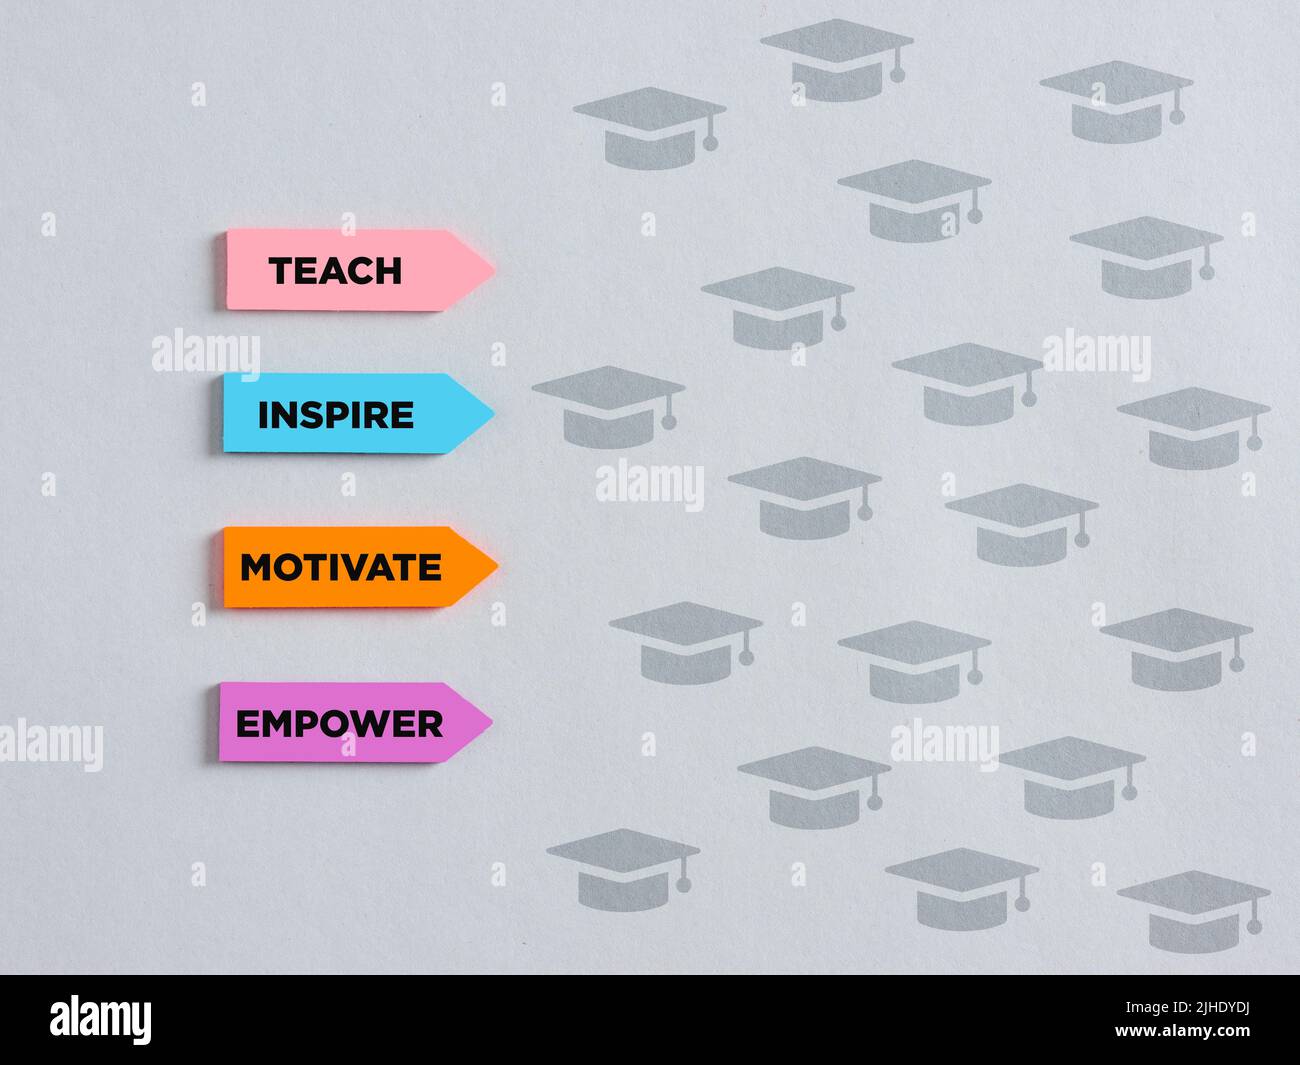 Pfeilförmige bunte Aufkleber mit den grundlegenden pädagogischen Worten lehren, inspirieren motivieren und stärken. Konzept der pädagogischen Mentorschaft. Stockfoto